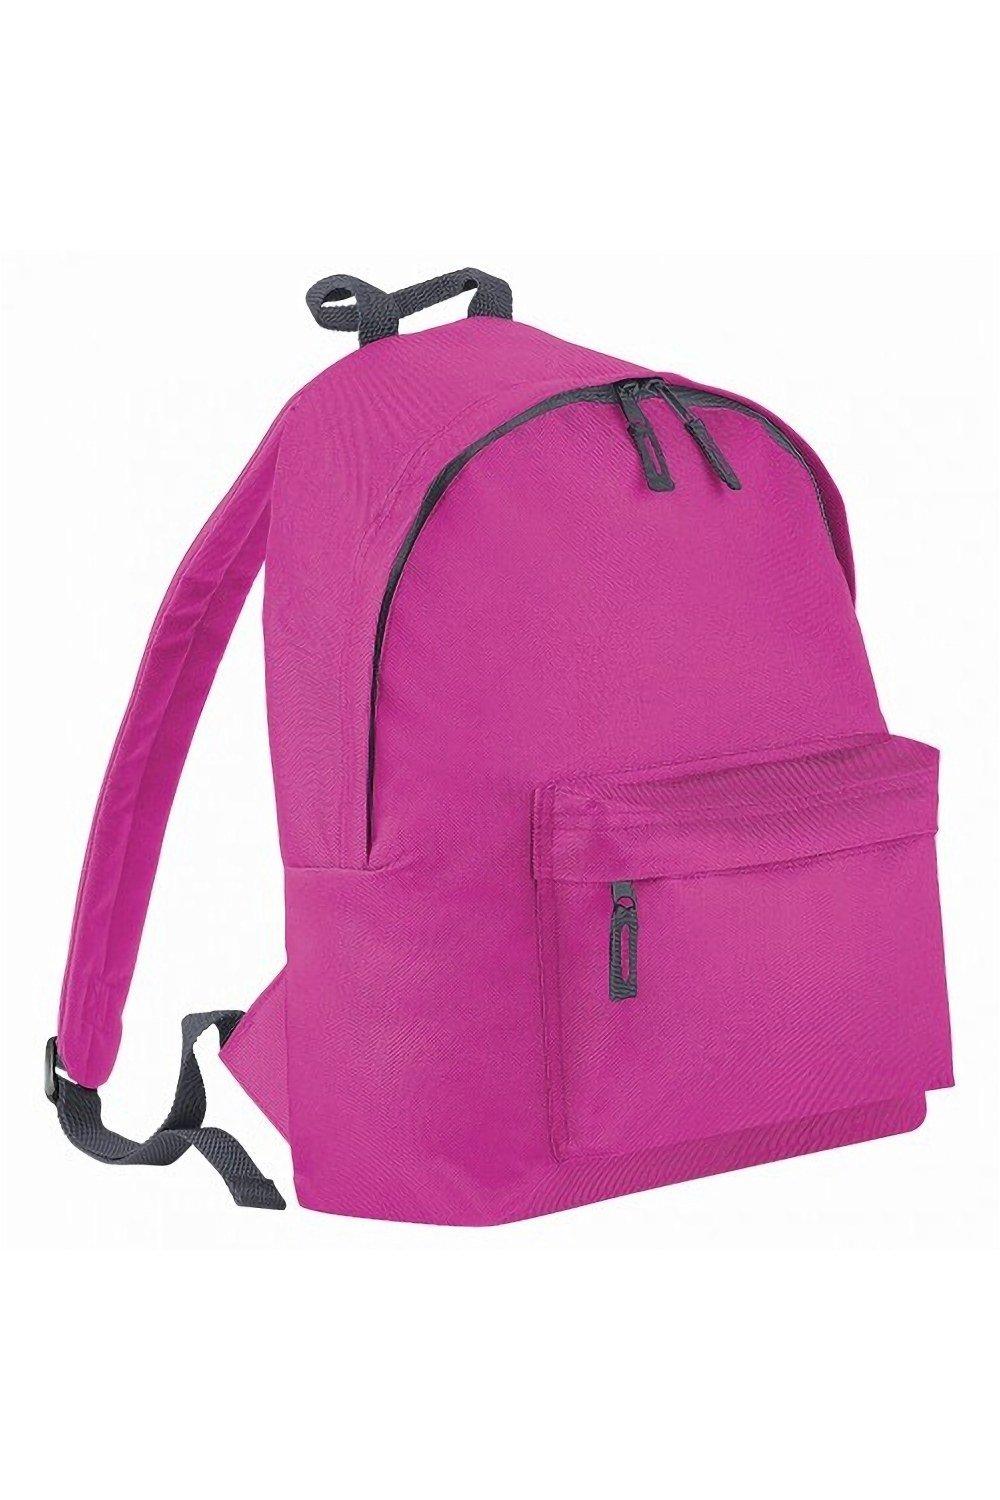 Модный рюкзак / рюкзак (14 литров) (2 шт. в упаковке) Bagbase, розовый trixie купалка для хомяков и мышей дерево 22 х 12 х 12 см 63004 0 325 кг 56348 1 шт